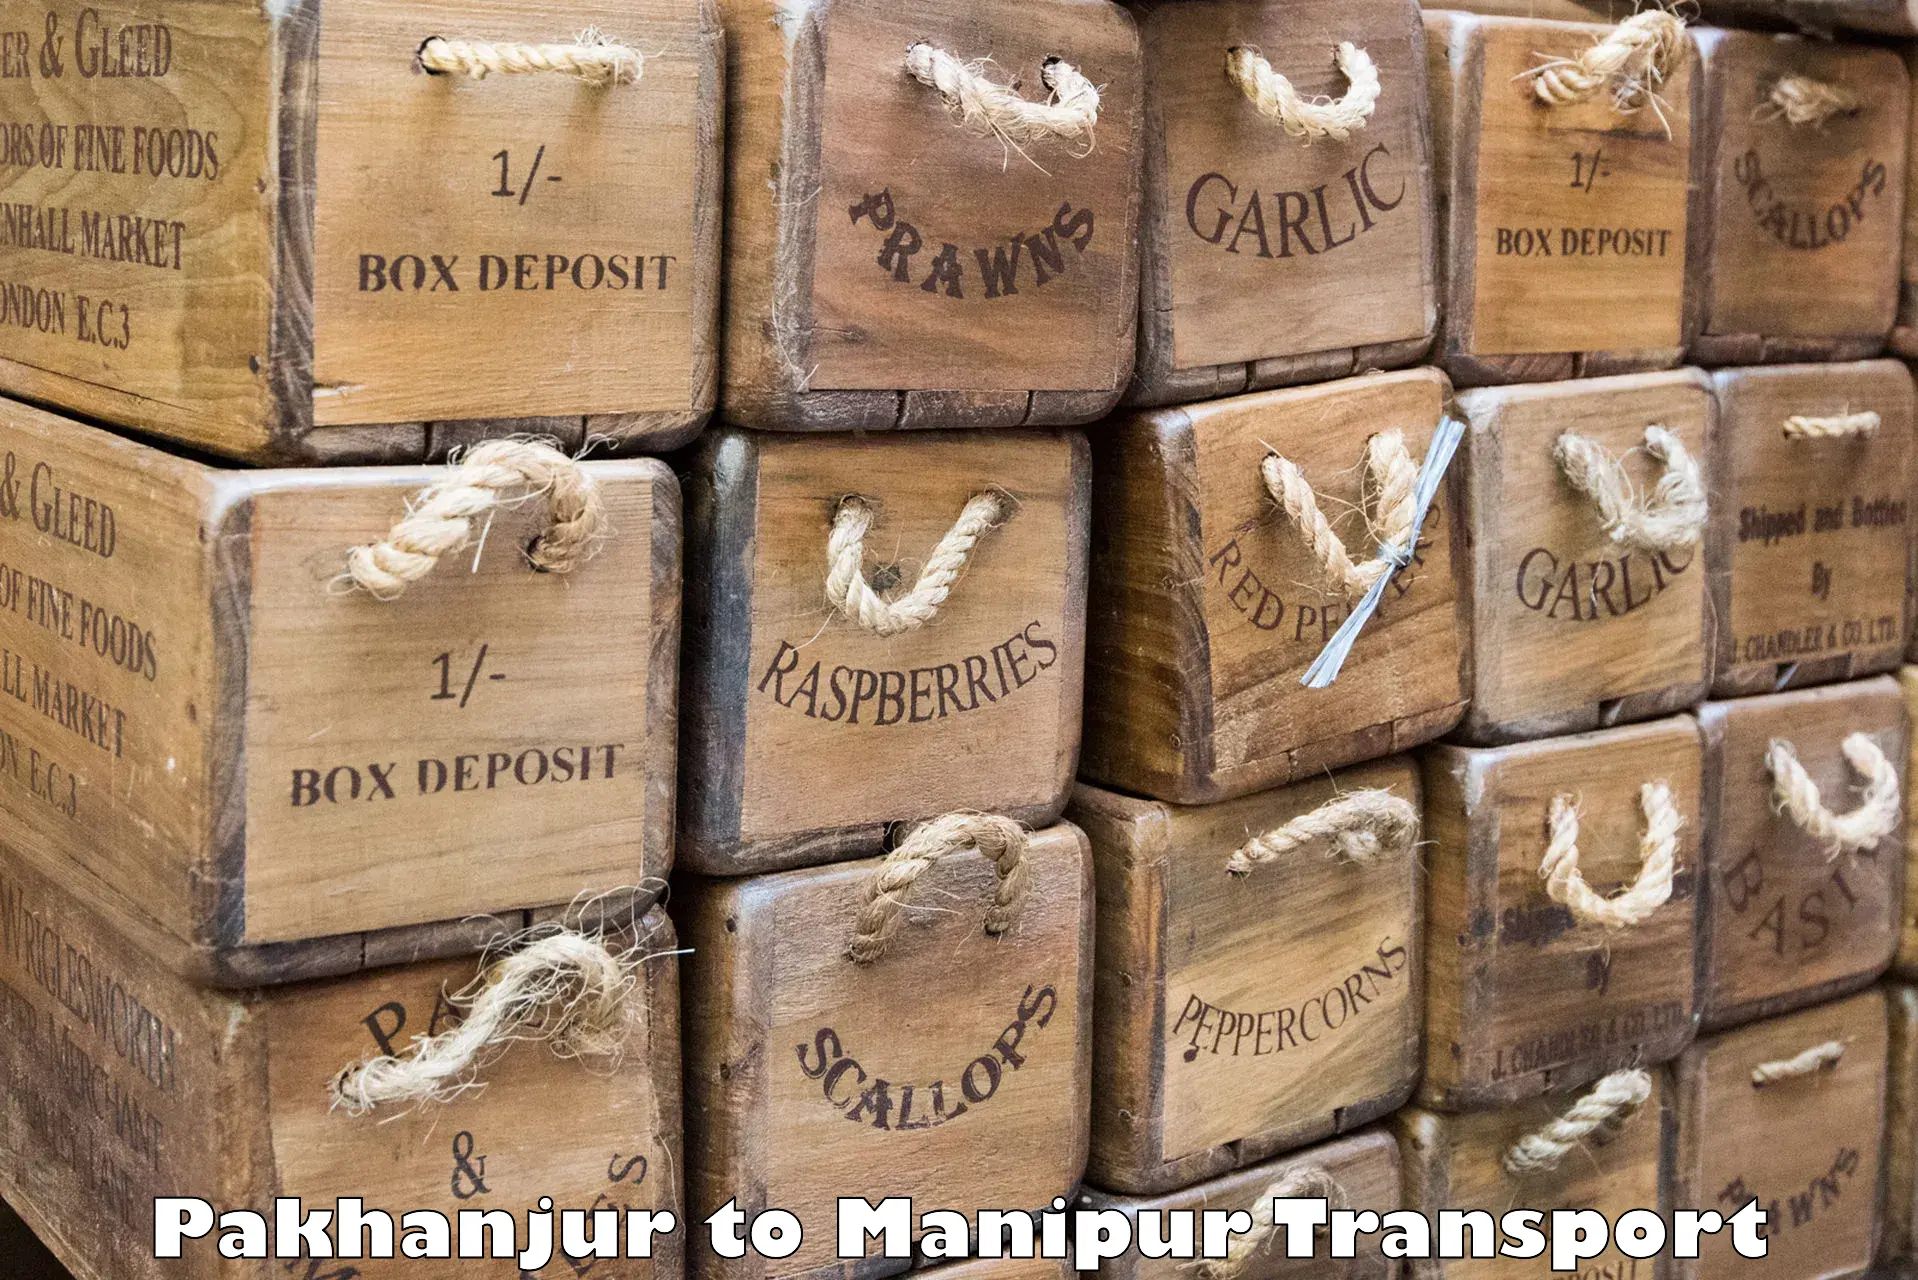 Daily transport service Pakhanjur to Manipur